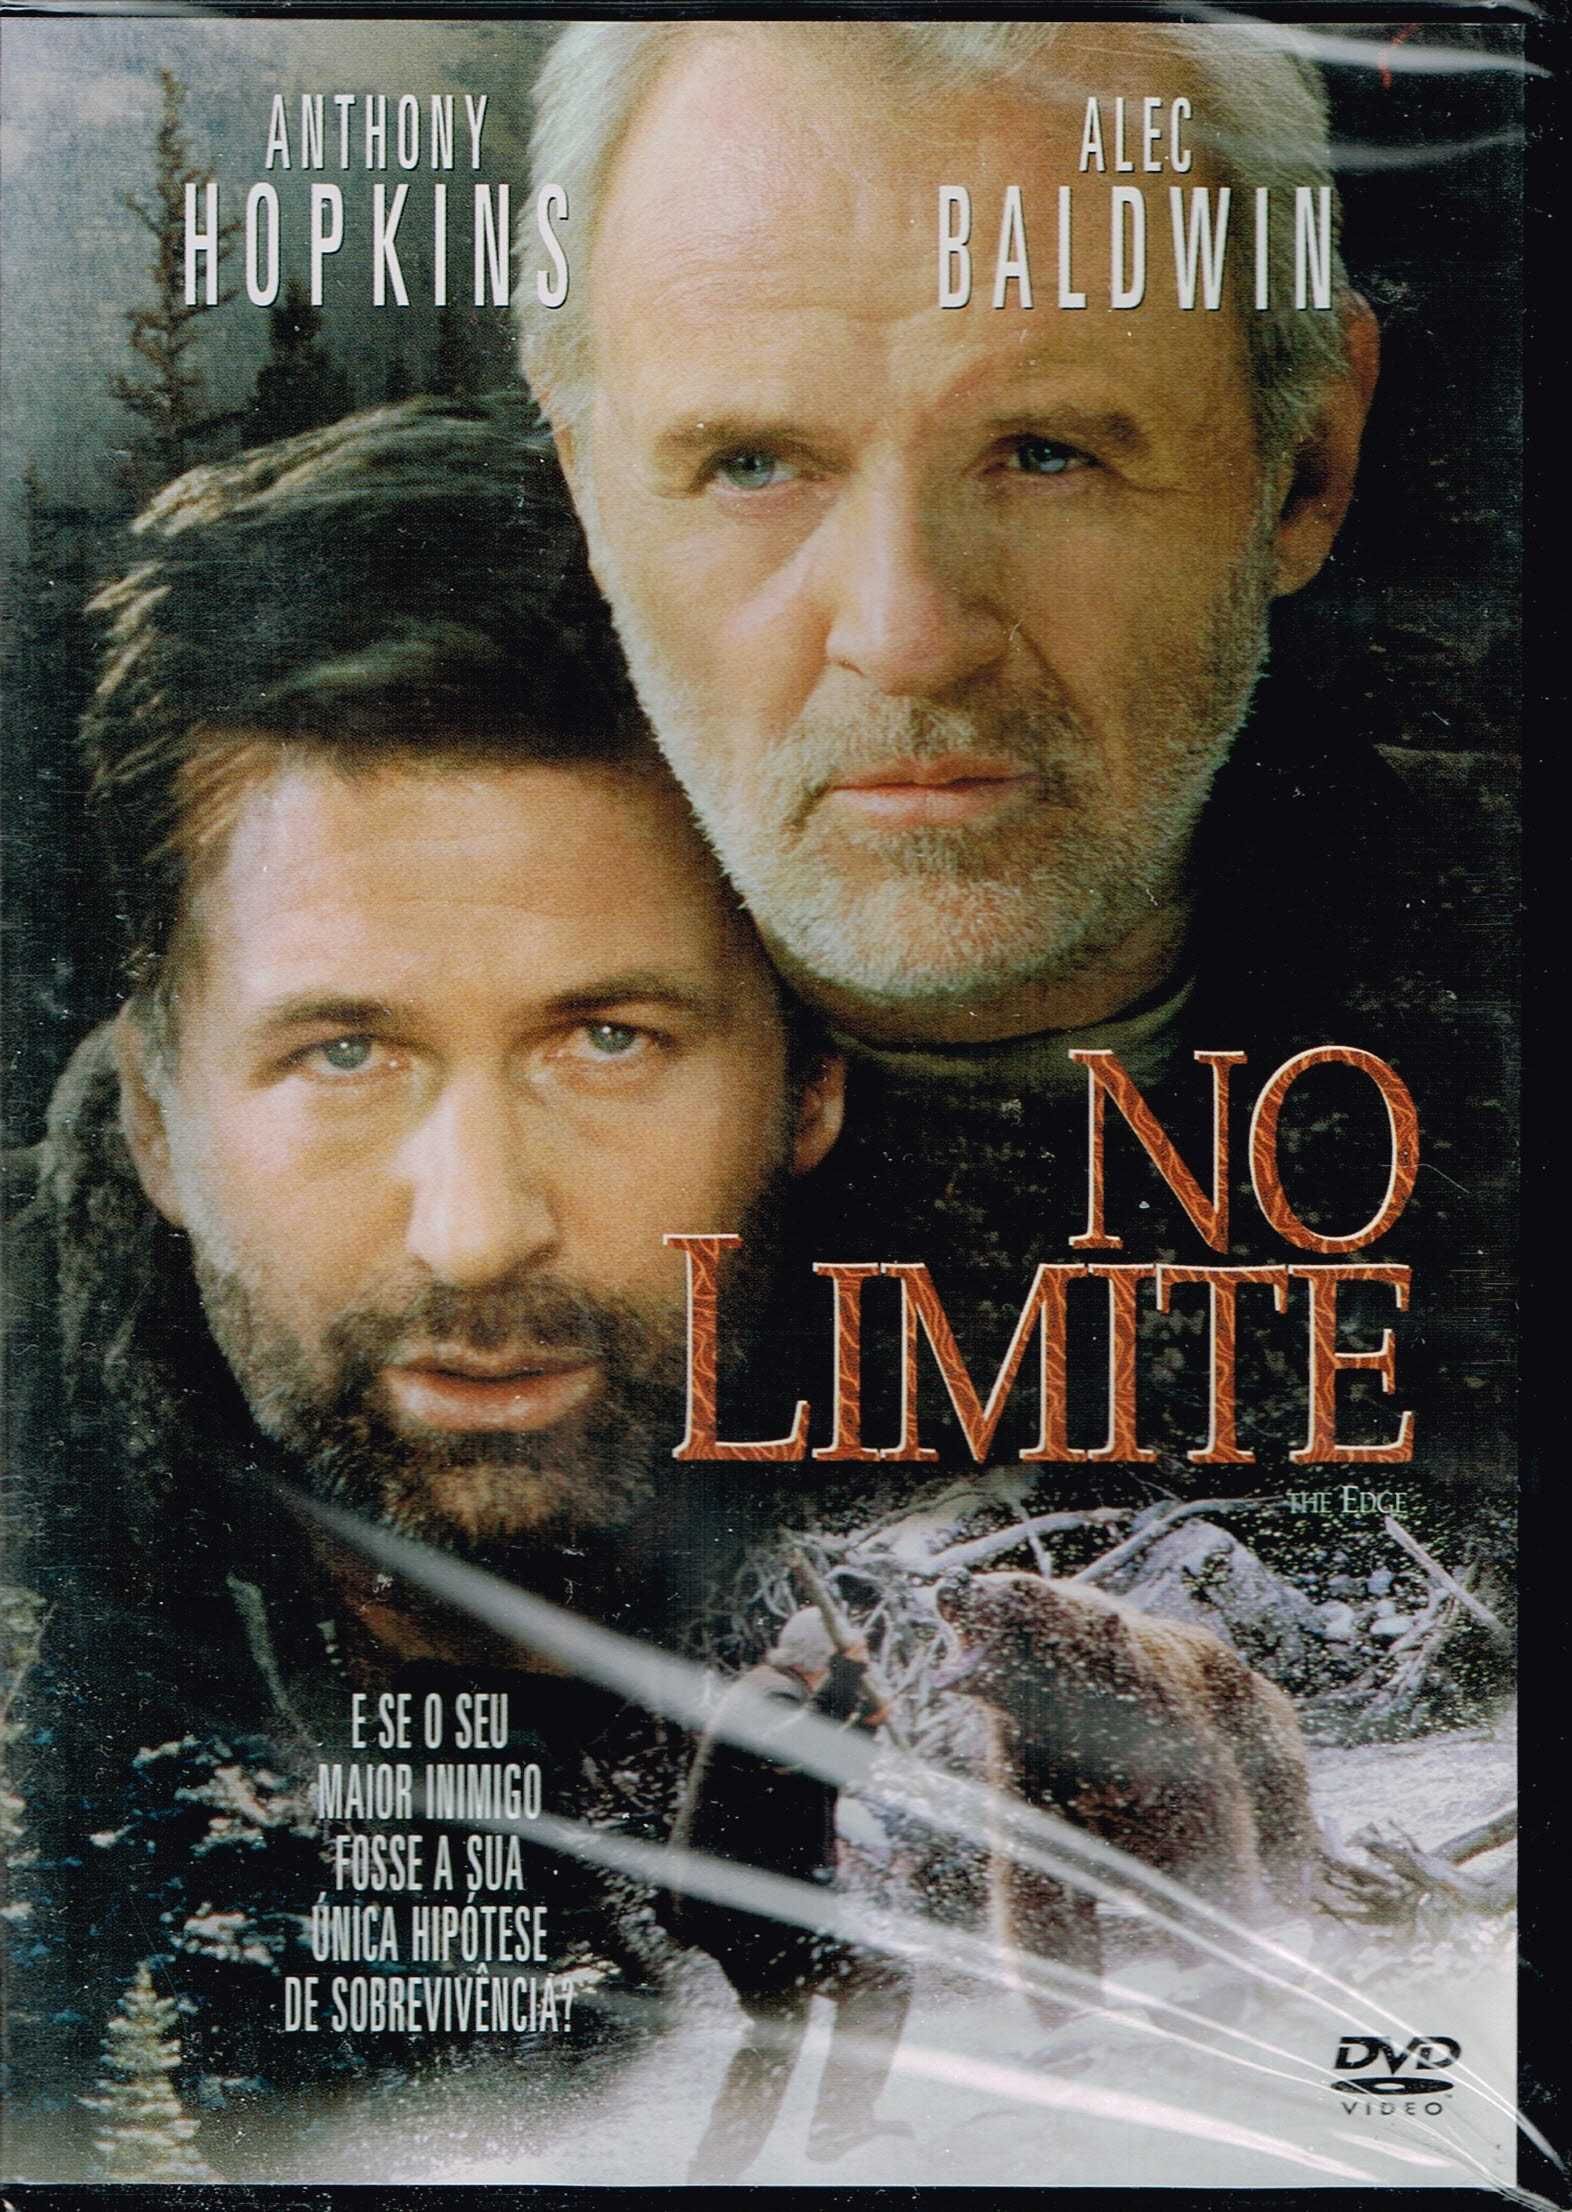 Filme em DVD: No Limite "The Edge" - NOVO! SELADO!